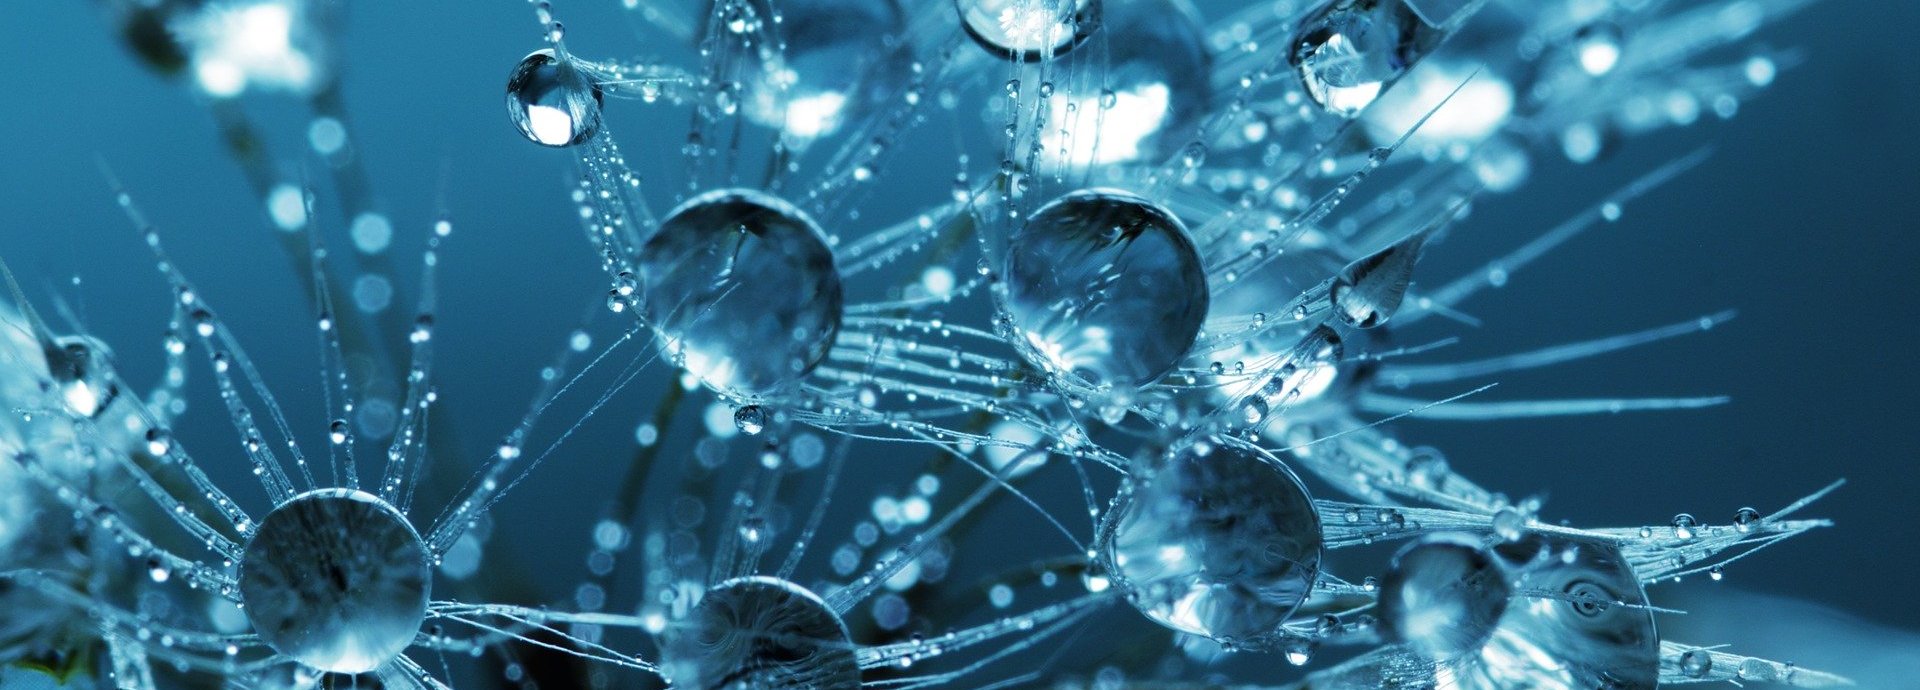 Grafik von Wasserstoffmolekülen vor blauem Hintergrund